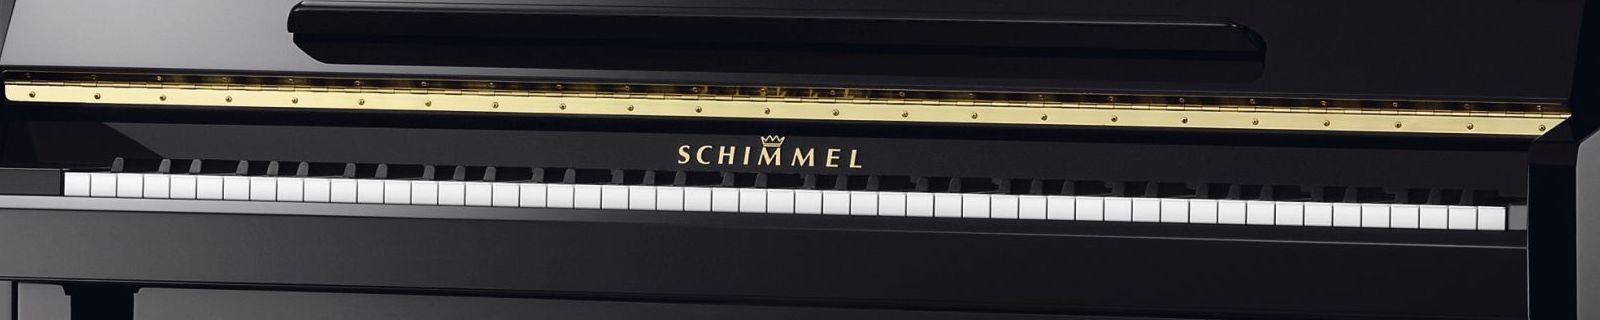 Schimmel akusztikus pianínók